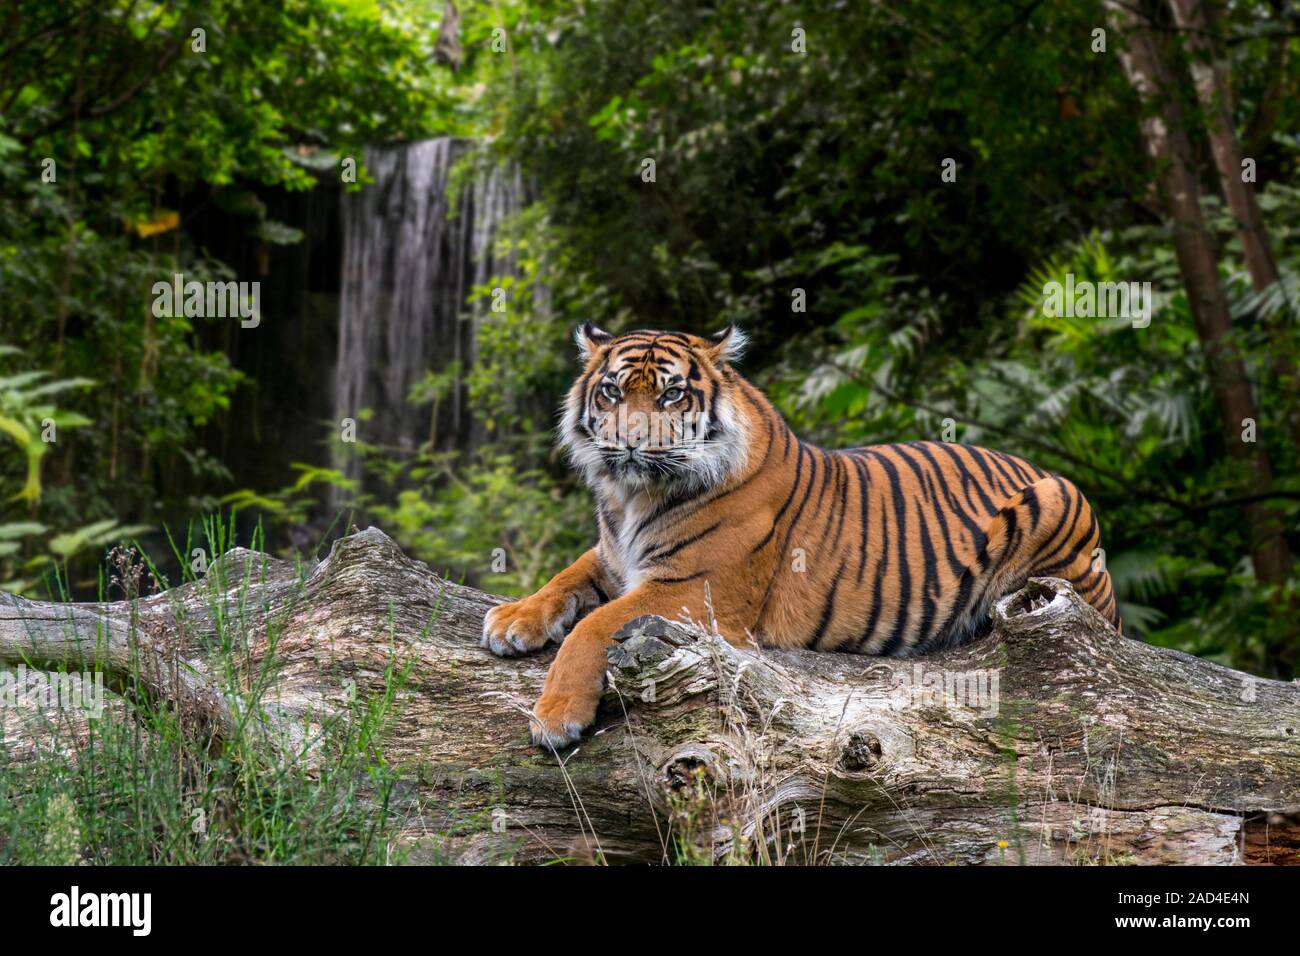 Sumatra-tiger (Panthera tigris sondaica) ruht auf gefallenen Baumstamm in tropischen Wald, native auf der indonesischen Insel Sumatra, Indonesien Stockfoto